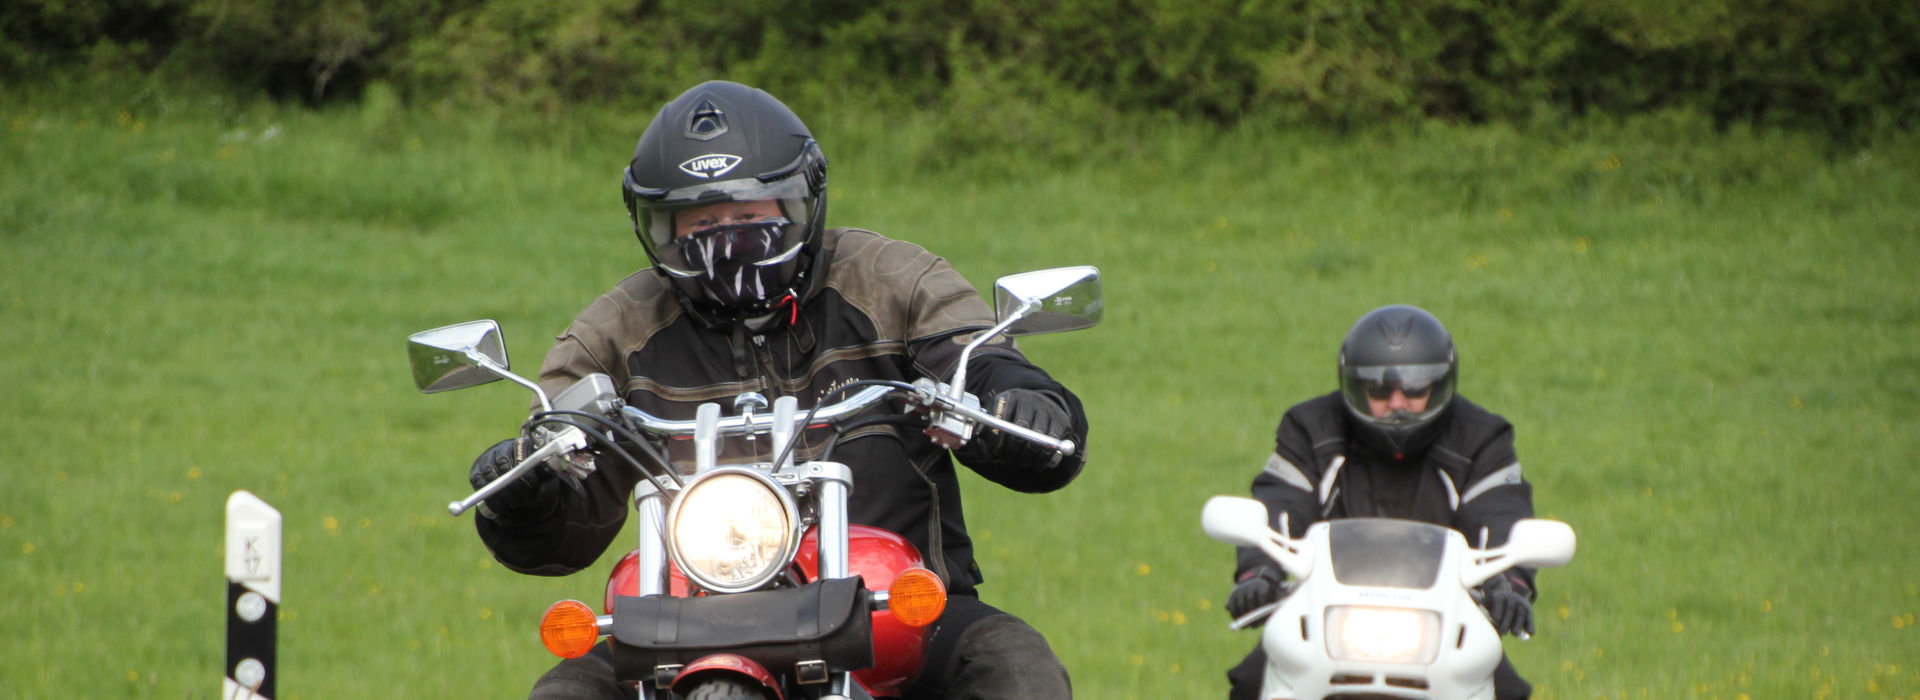 Motorrijschool Motorrijbewijspoint Gelderland motorrijlessen